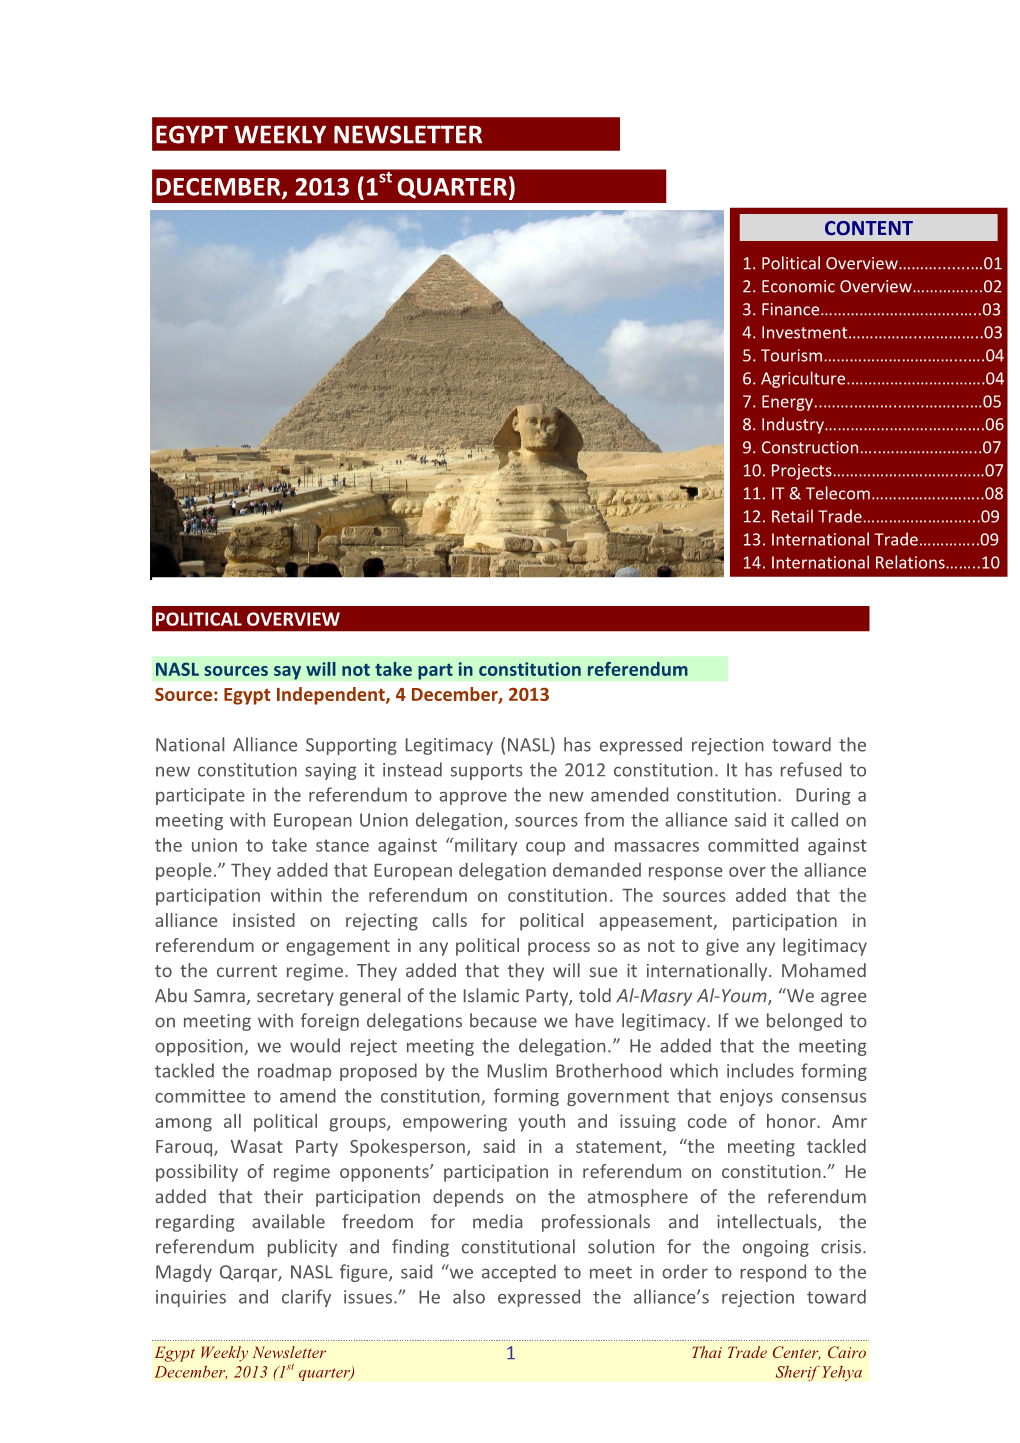 Egypt Weekly Newsletter December 2013, 1St Quarter